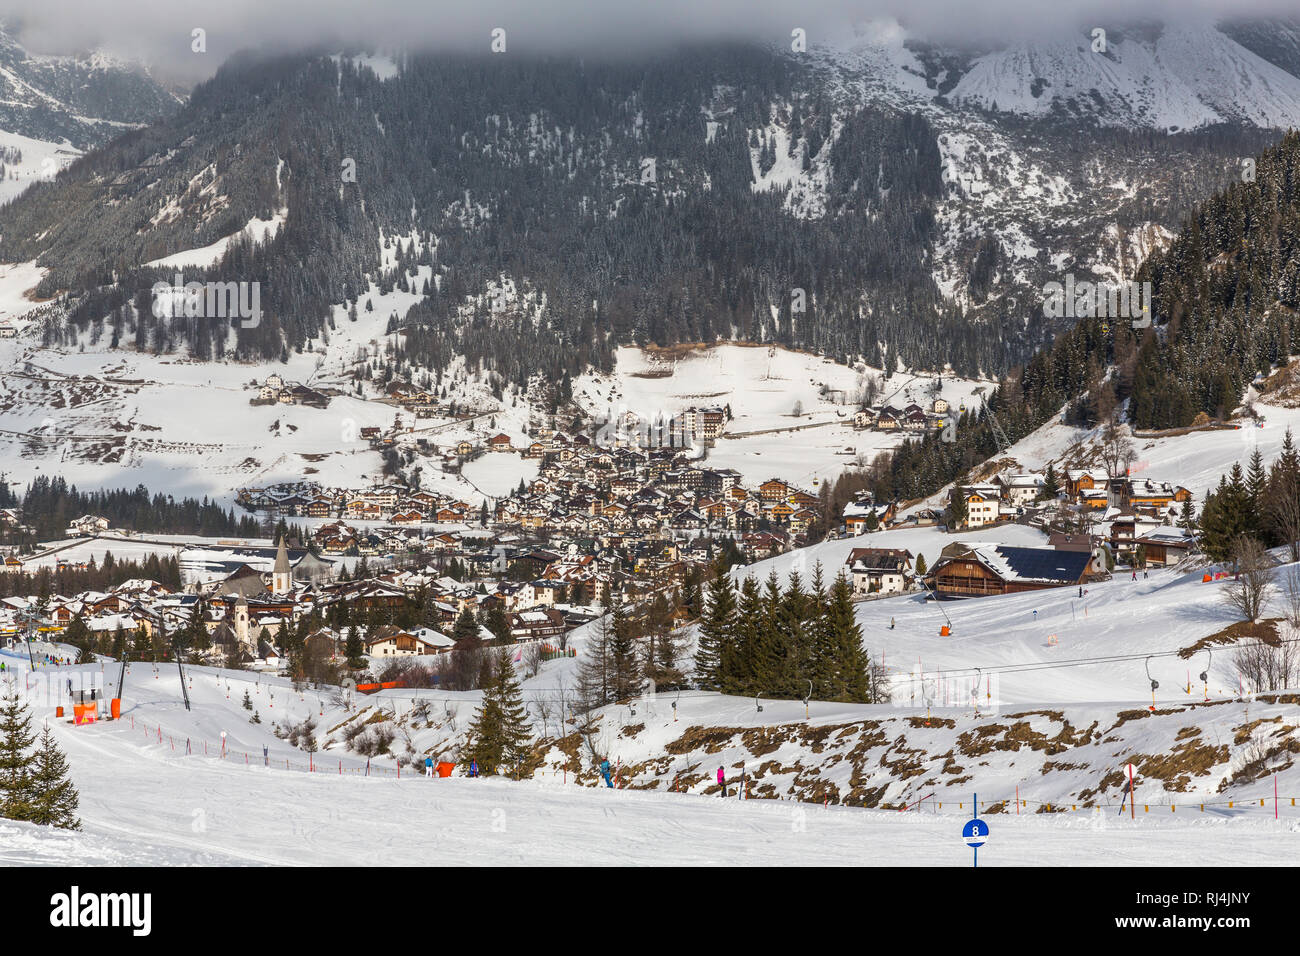 Skiregion Corvara, S?dtirol, Alto Adige, Dolomiten, Italien, Europa Stock Photo